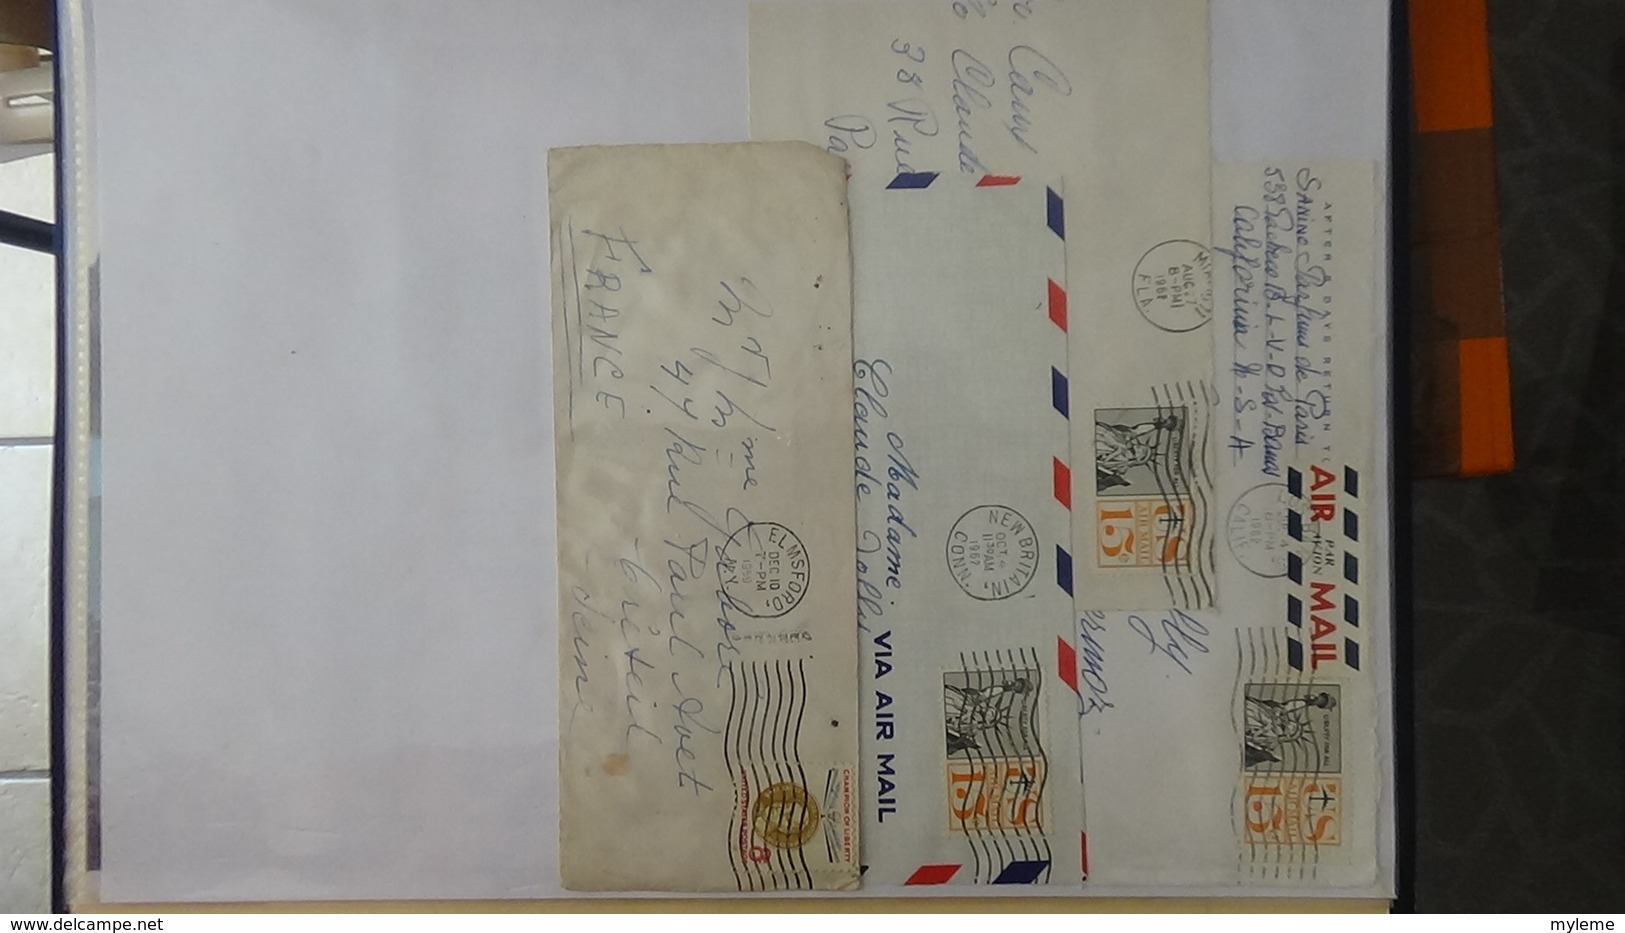 Collection oblitérés des Etats Unis en timbres, enveloppes, courriers, cartes postales ... !!!